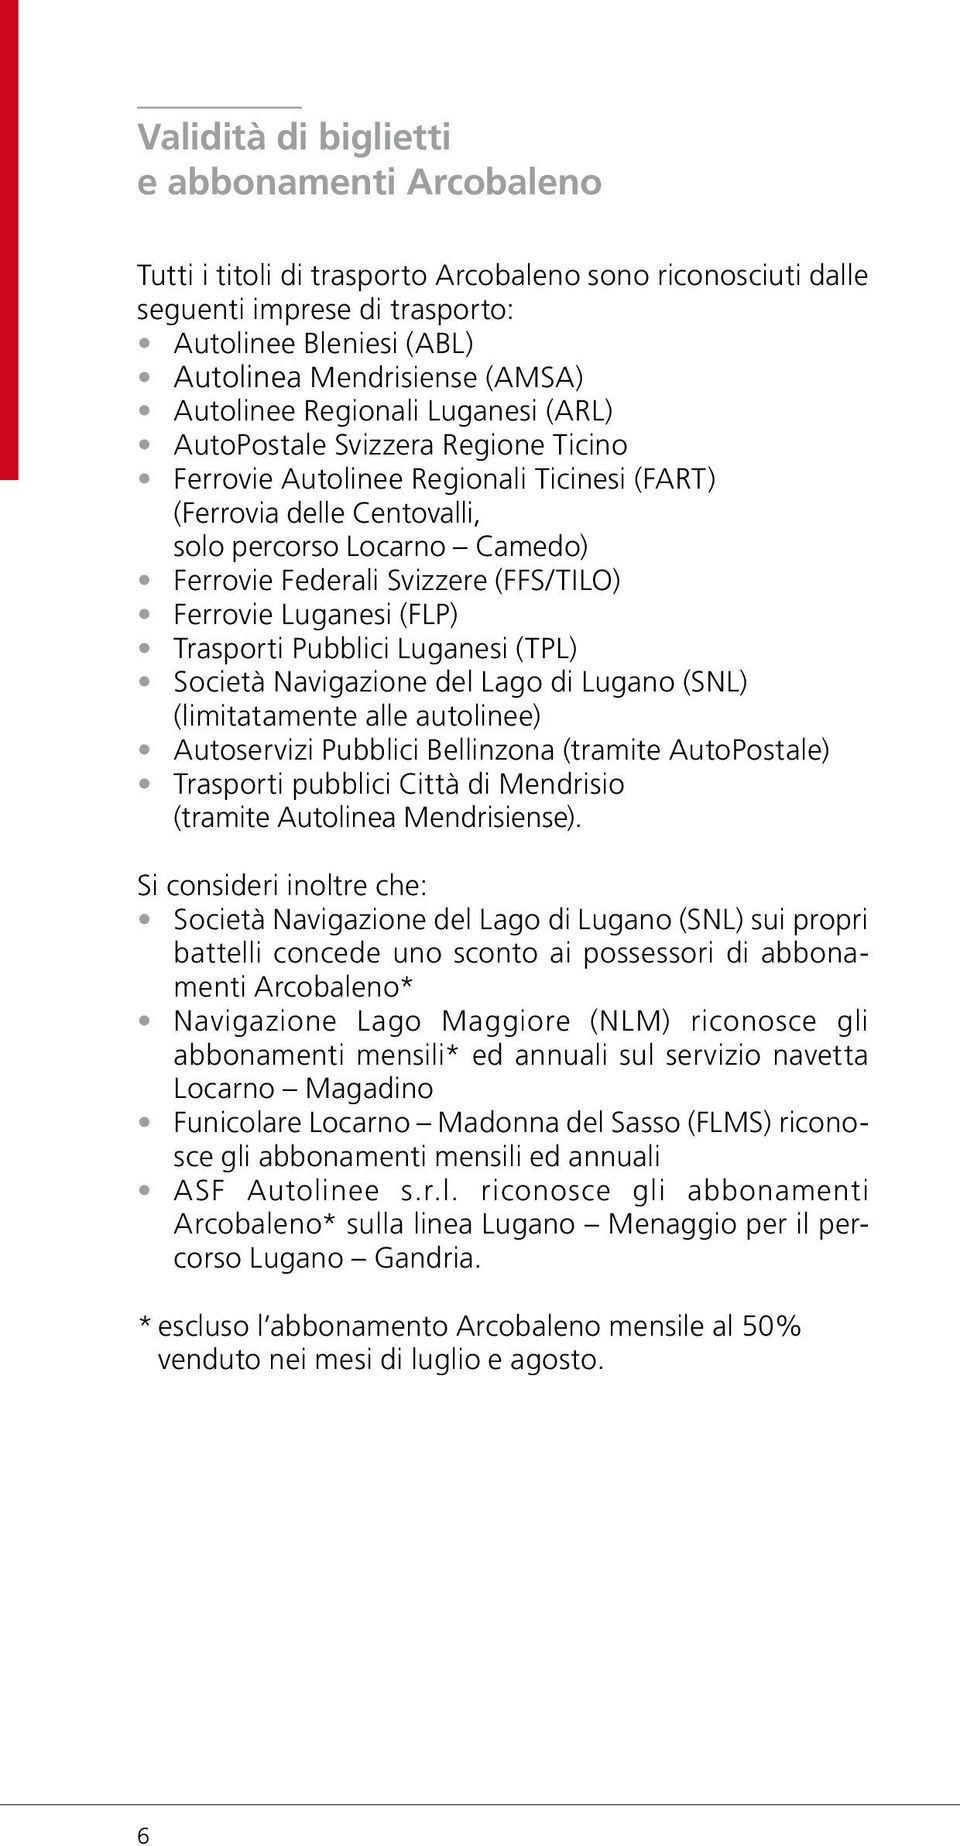 Svizzere (FFS/TILO) Ferrovie Luganesi (FLP) Trasporti Pubblici Luganesi (TPL) Società Navigazione del Lago di Lugano (SNL) (limitatamente alle autolinee) Autoservizi Pubblici Bellinzona (tramite